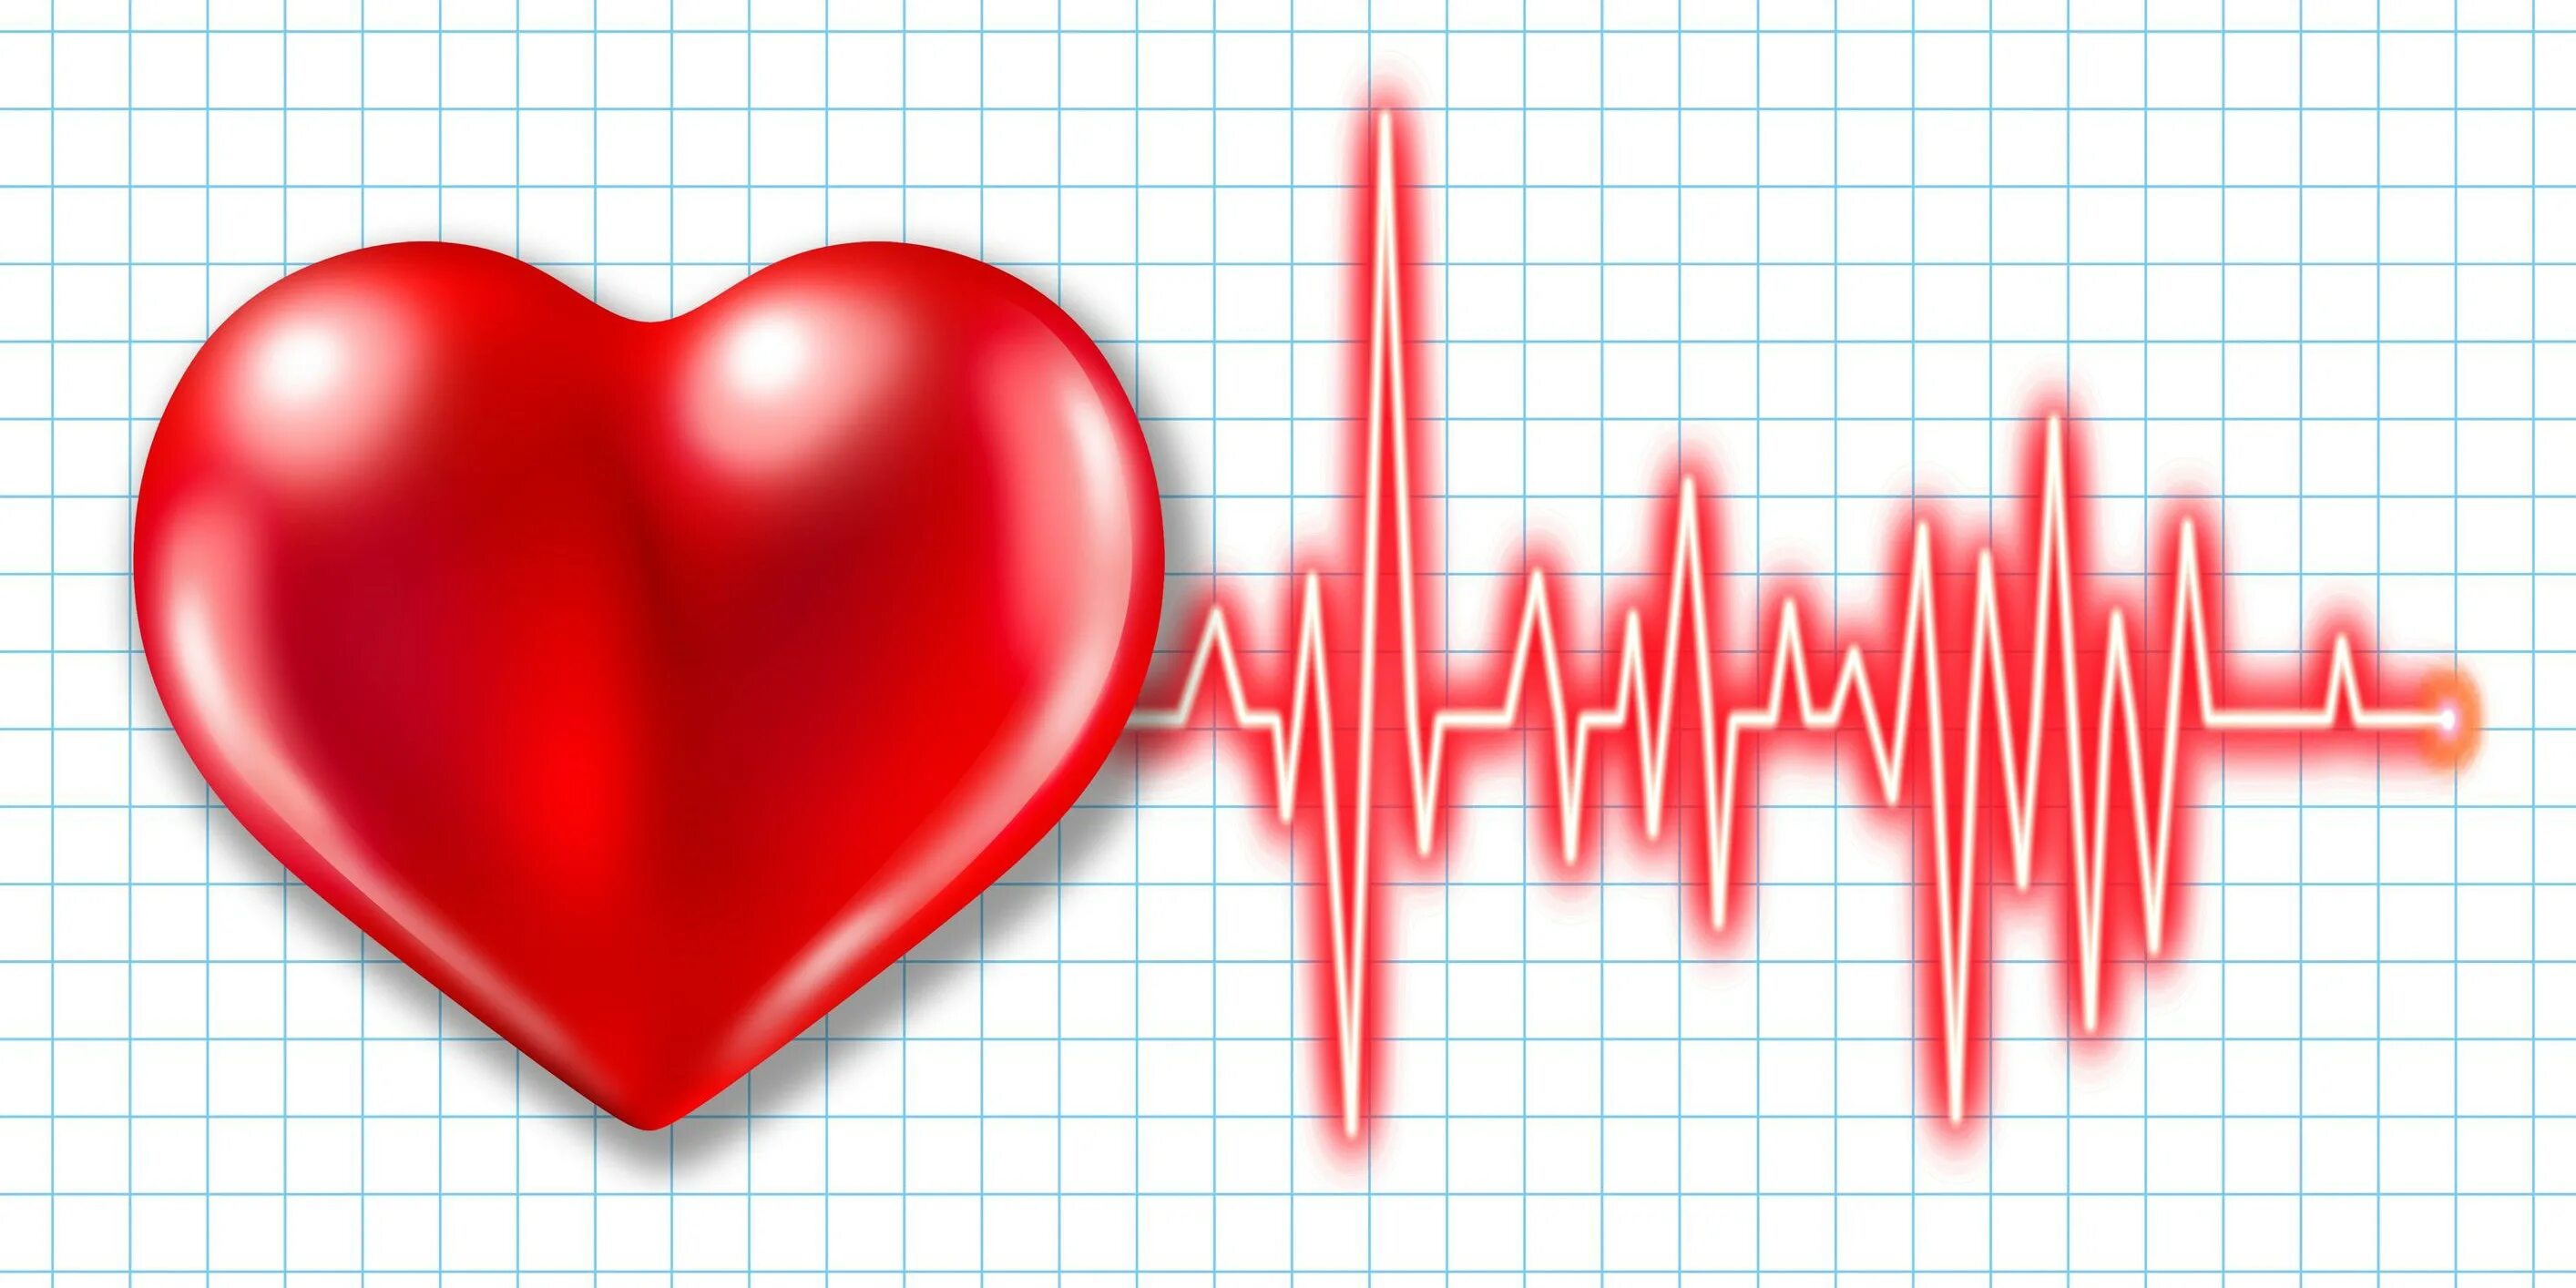 Увеличение сердцебиение. ЭКГ сердца. Кардиограмма сердца. Кардиограмма сердца рисунок. Кардиограмма с сердечком.